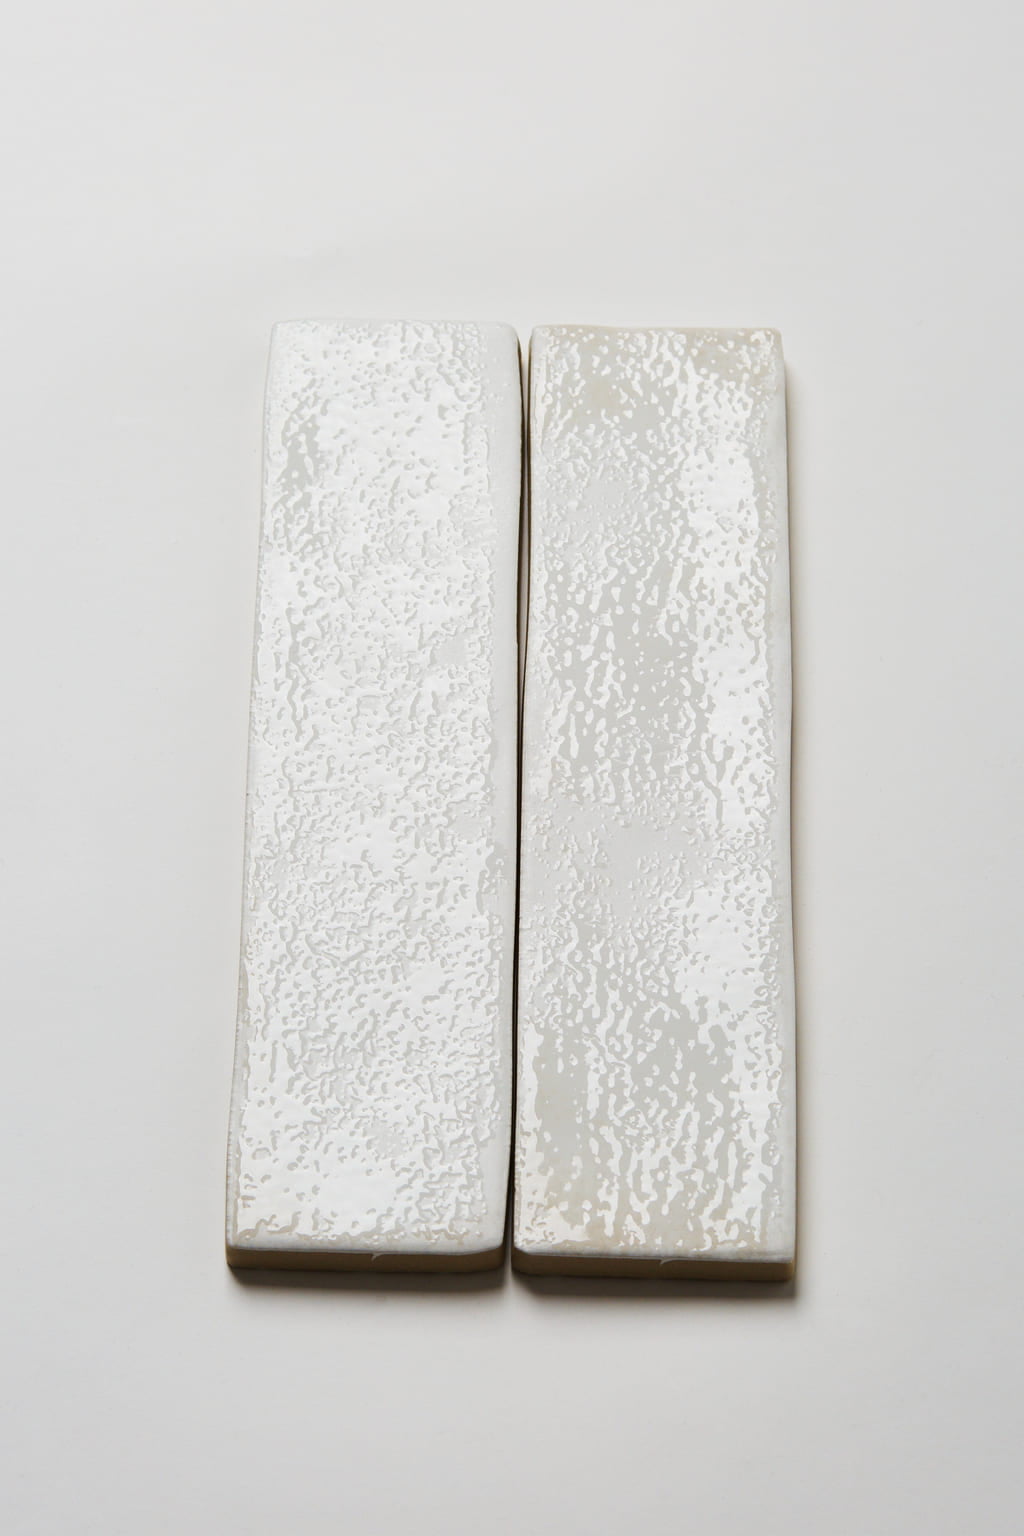 Hiszpańskie kafelki do łazienki białe cegiełki, Peronda Harmony SUNSET WHITE 6x25cm. Zdjęcie pokazuje błyszczącą strukturę powierzchni płytek ceramicznych, pokrytych niejednorodnie szkliwem.